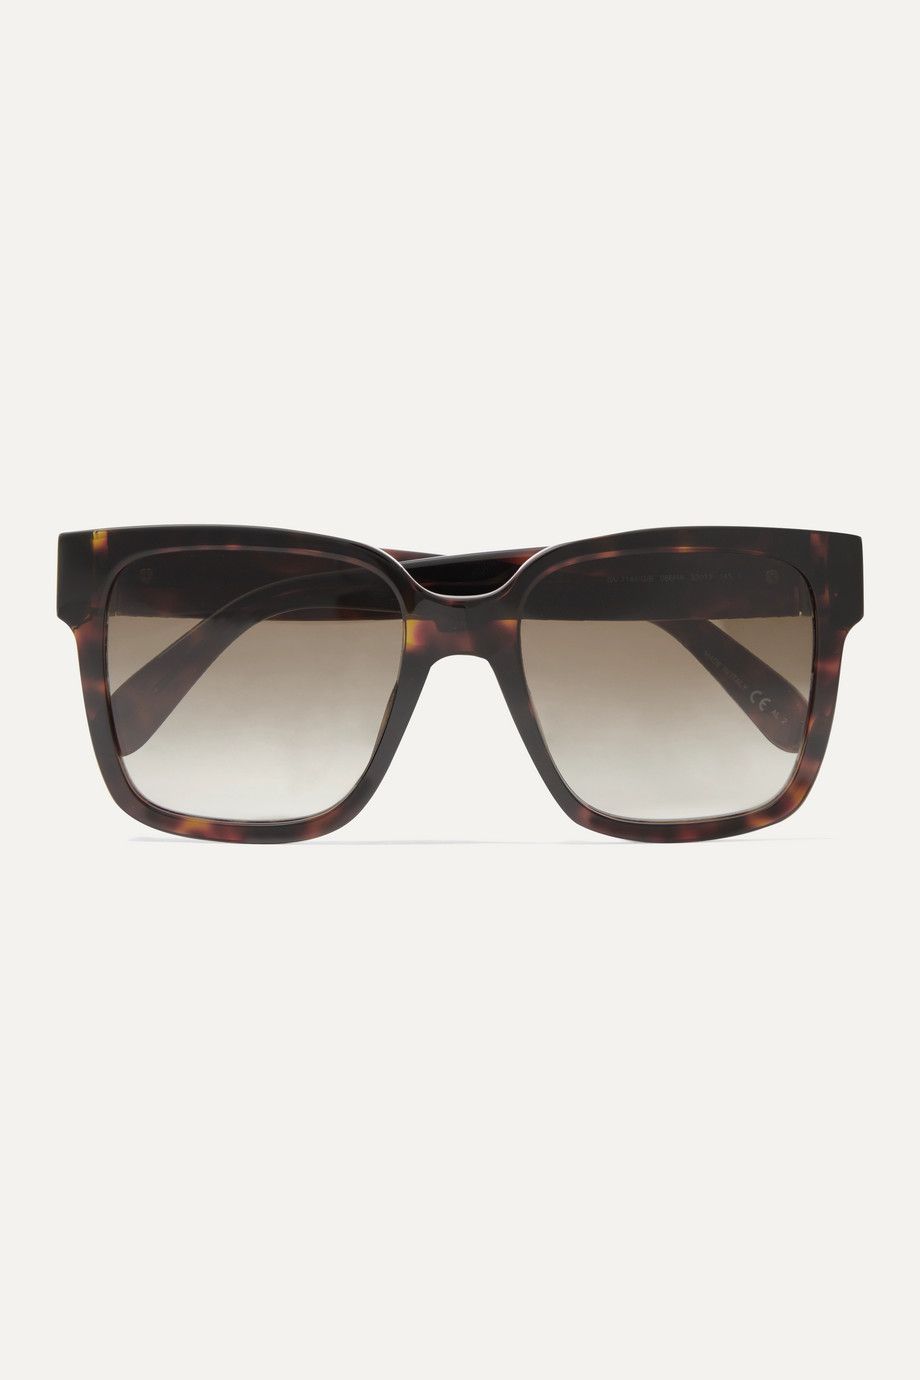 Givenchy Oversized square-frame tortoiseshell acetate sunglasses